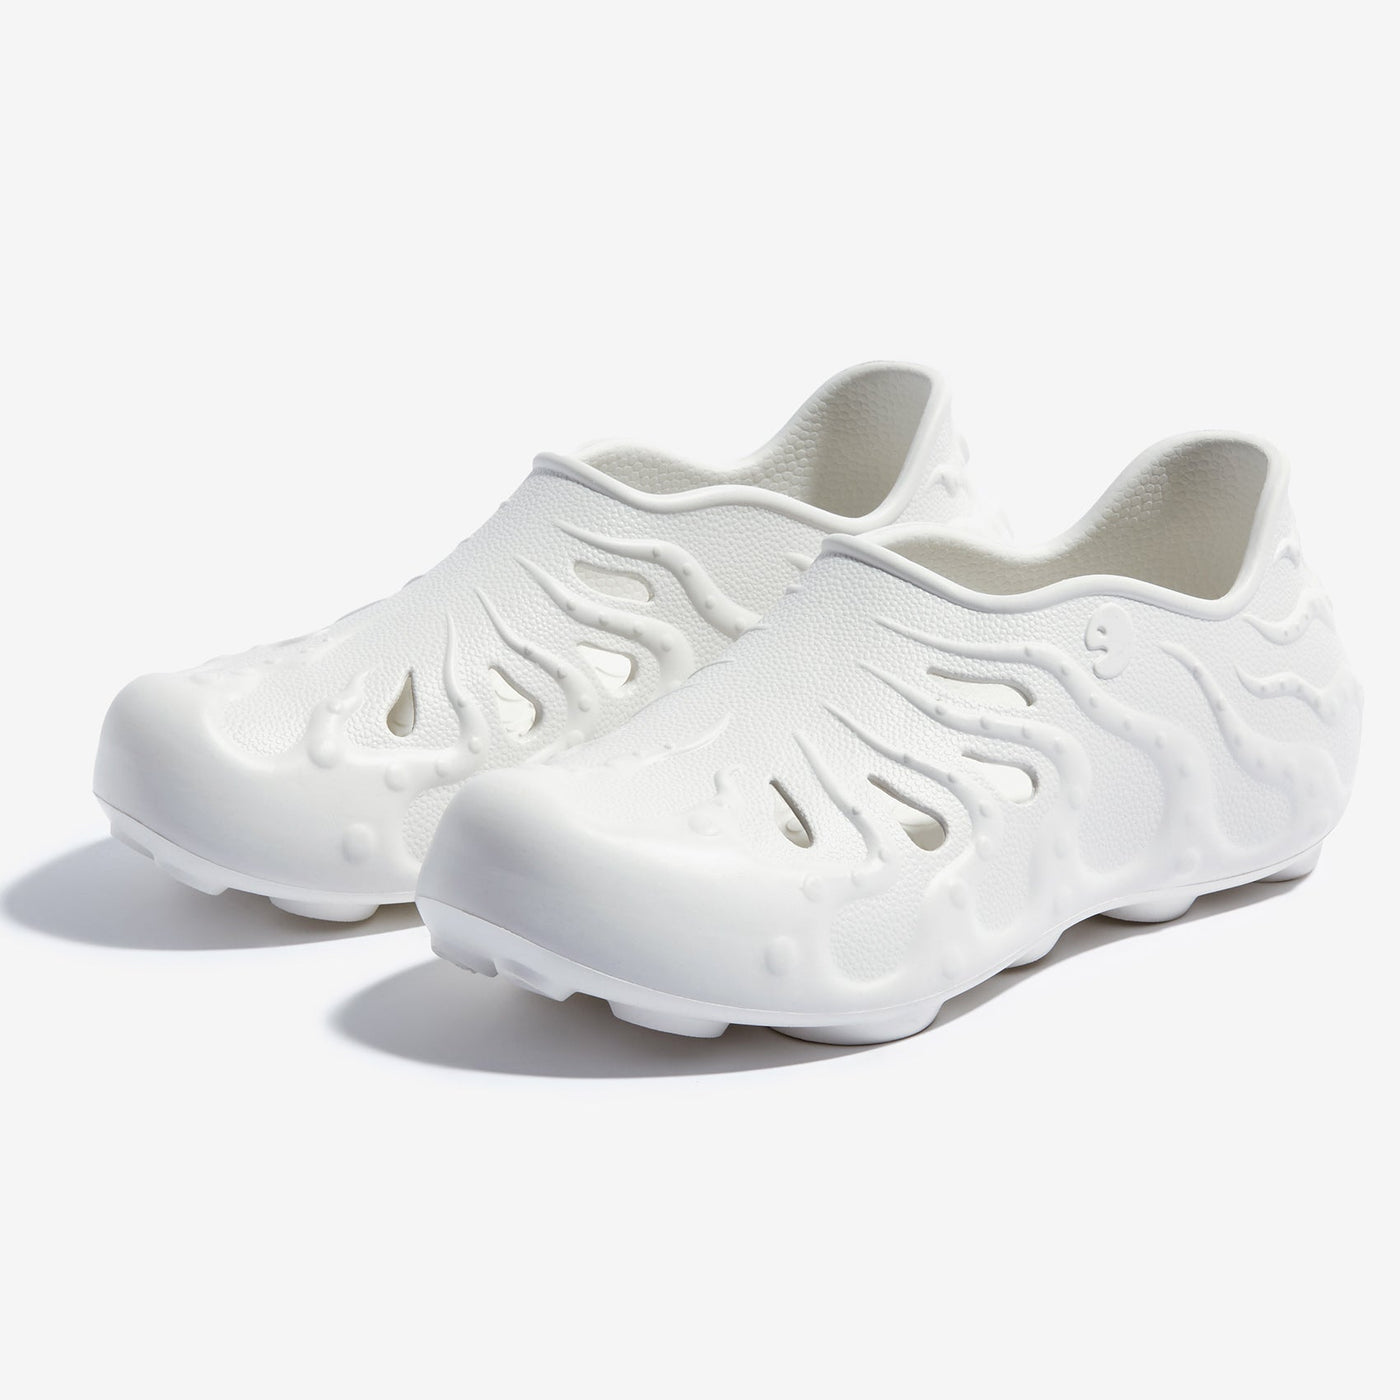 UIN Footwear Women Bright-Moon White Octopus II Women Canvas loafers